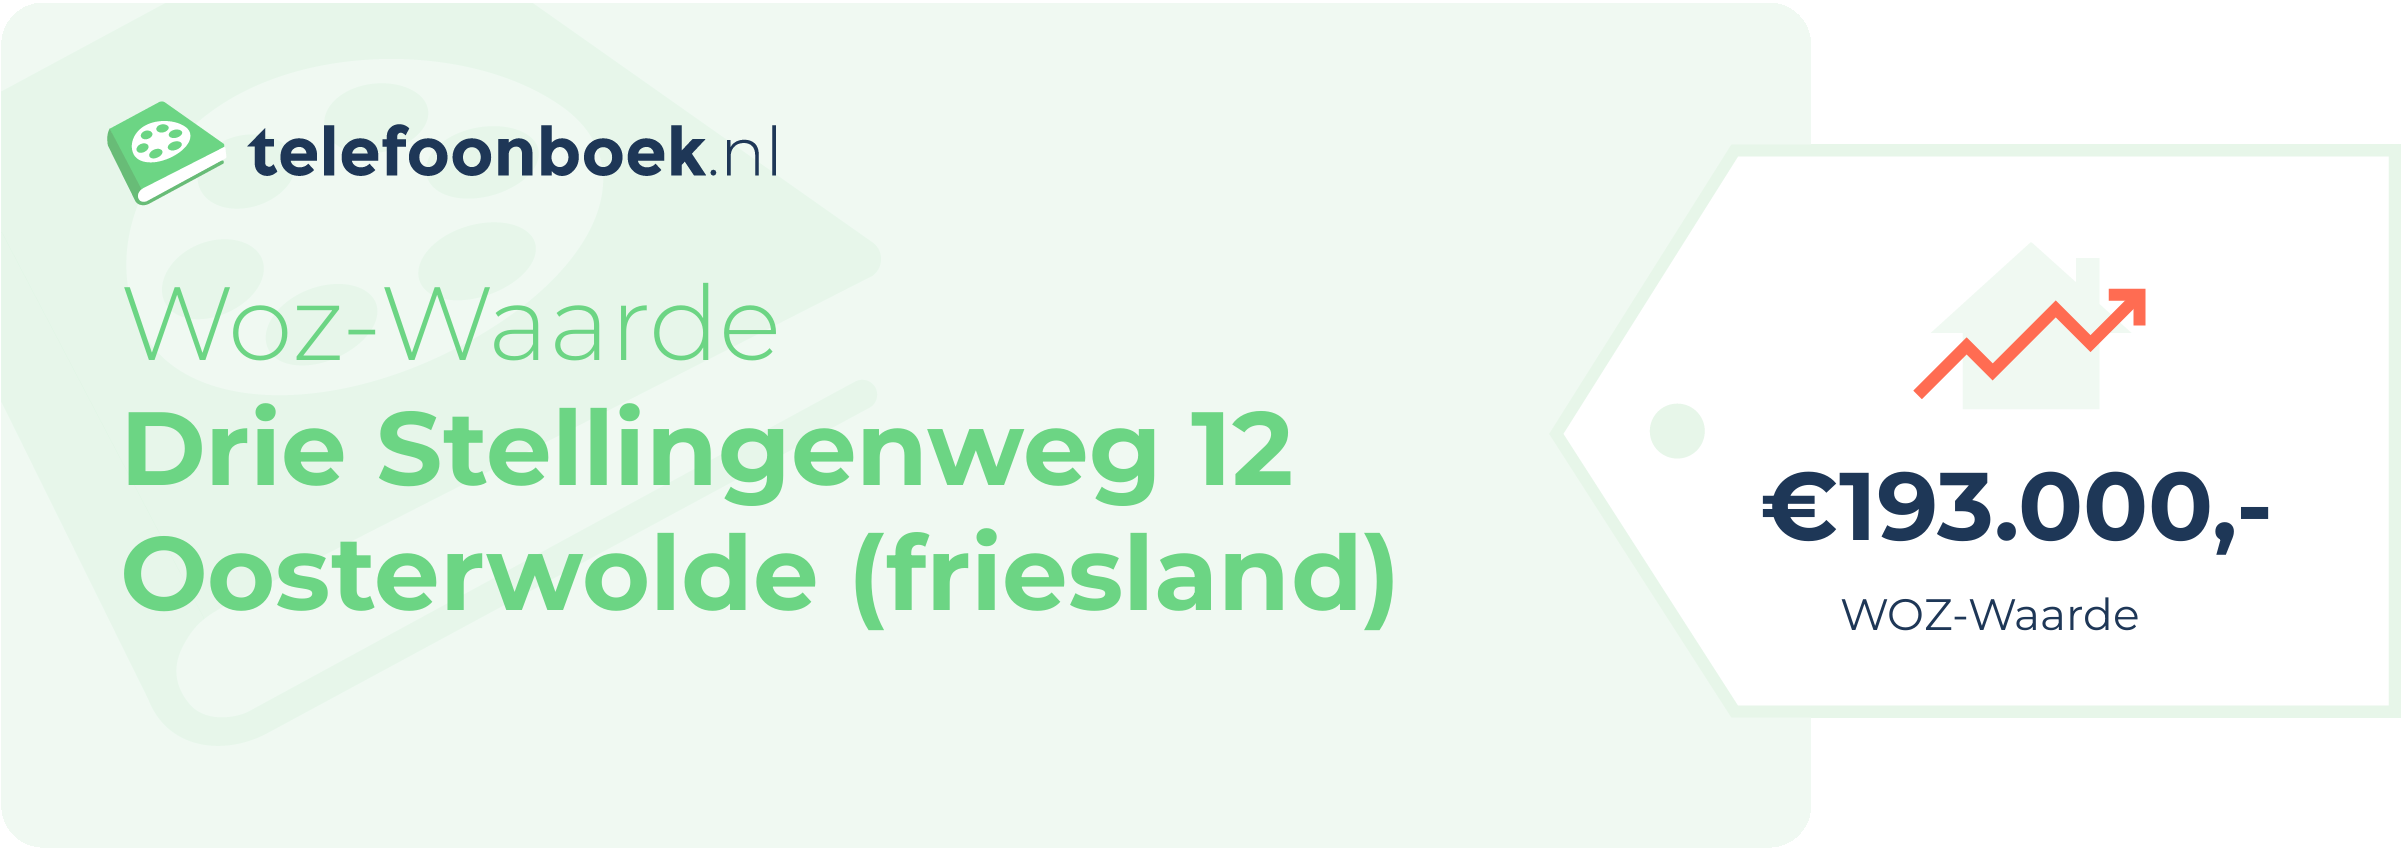 WOZ-waarde Drie Stellingenweg 12 Oosterwolde (Friesland)